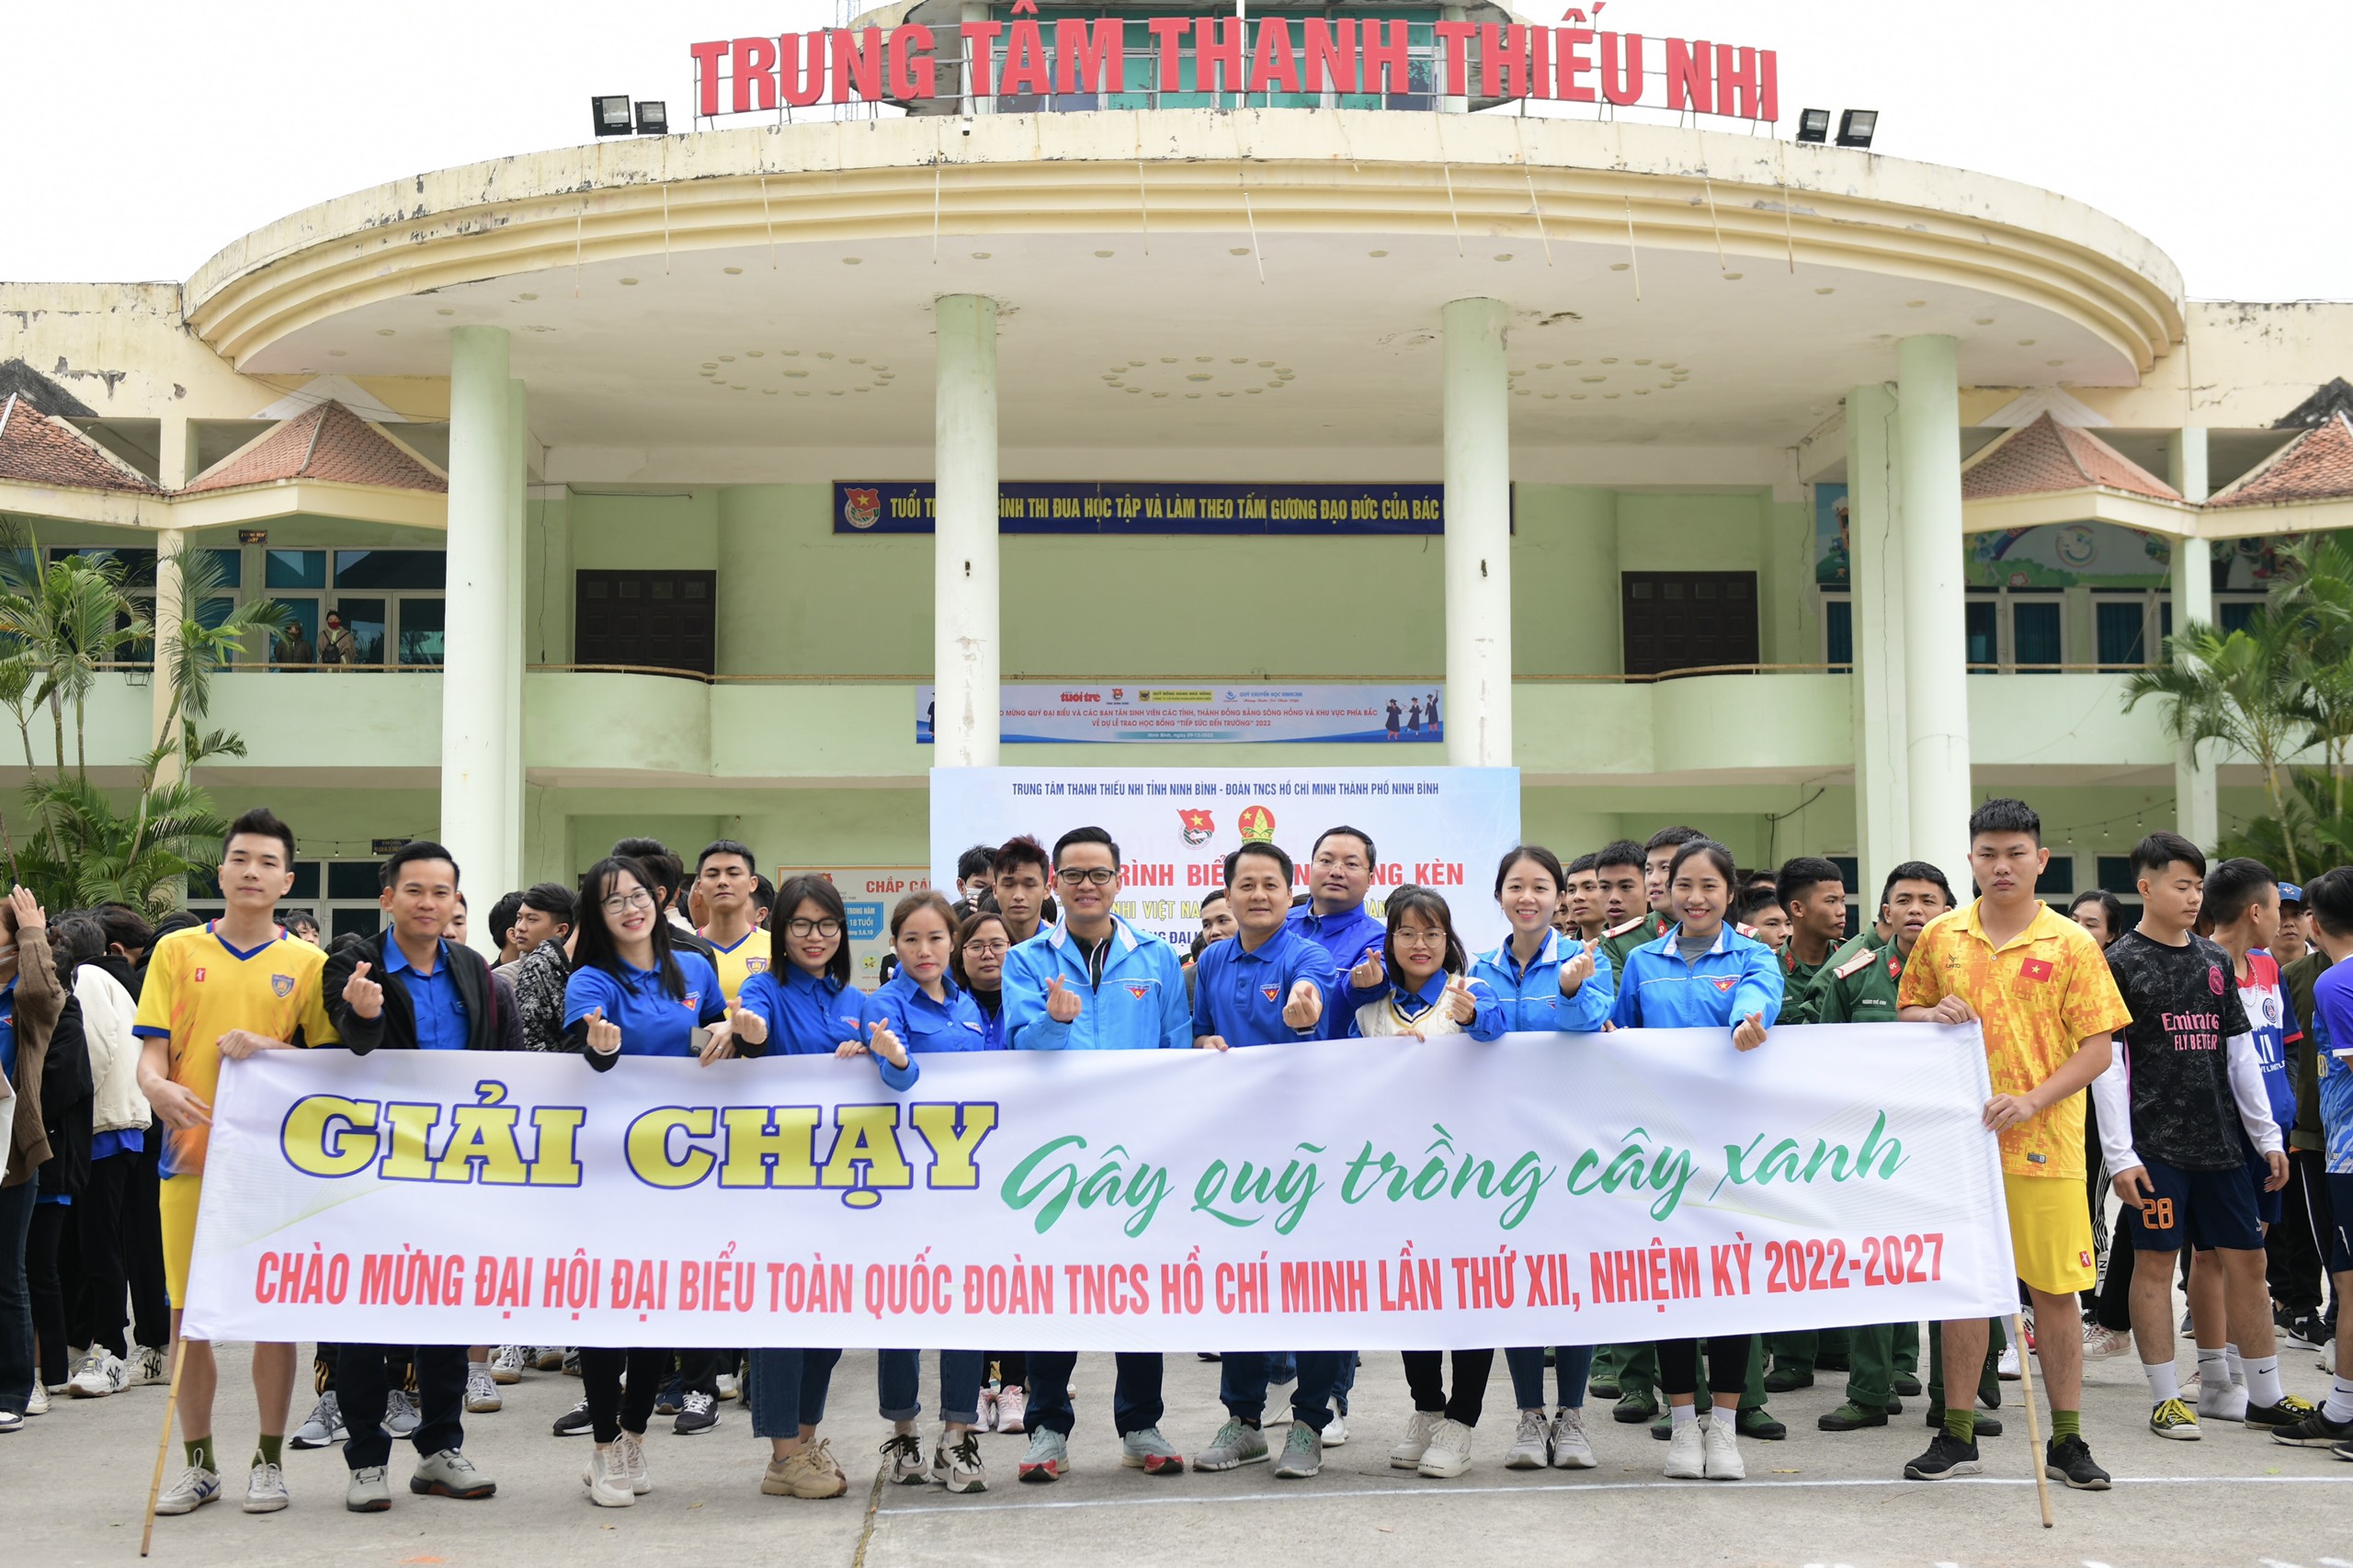 Tuổi trẻ Ninh Bình hưởng ứng các hoạt động chào mừng thành công Đại hội đại biểu toàn quốc Đoàn TNCS Hồ chí Minh lần thứ XII